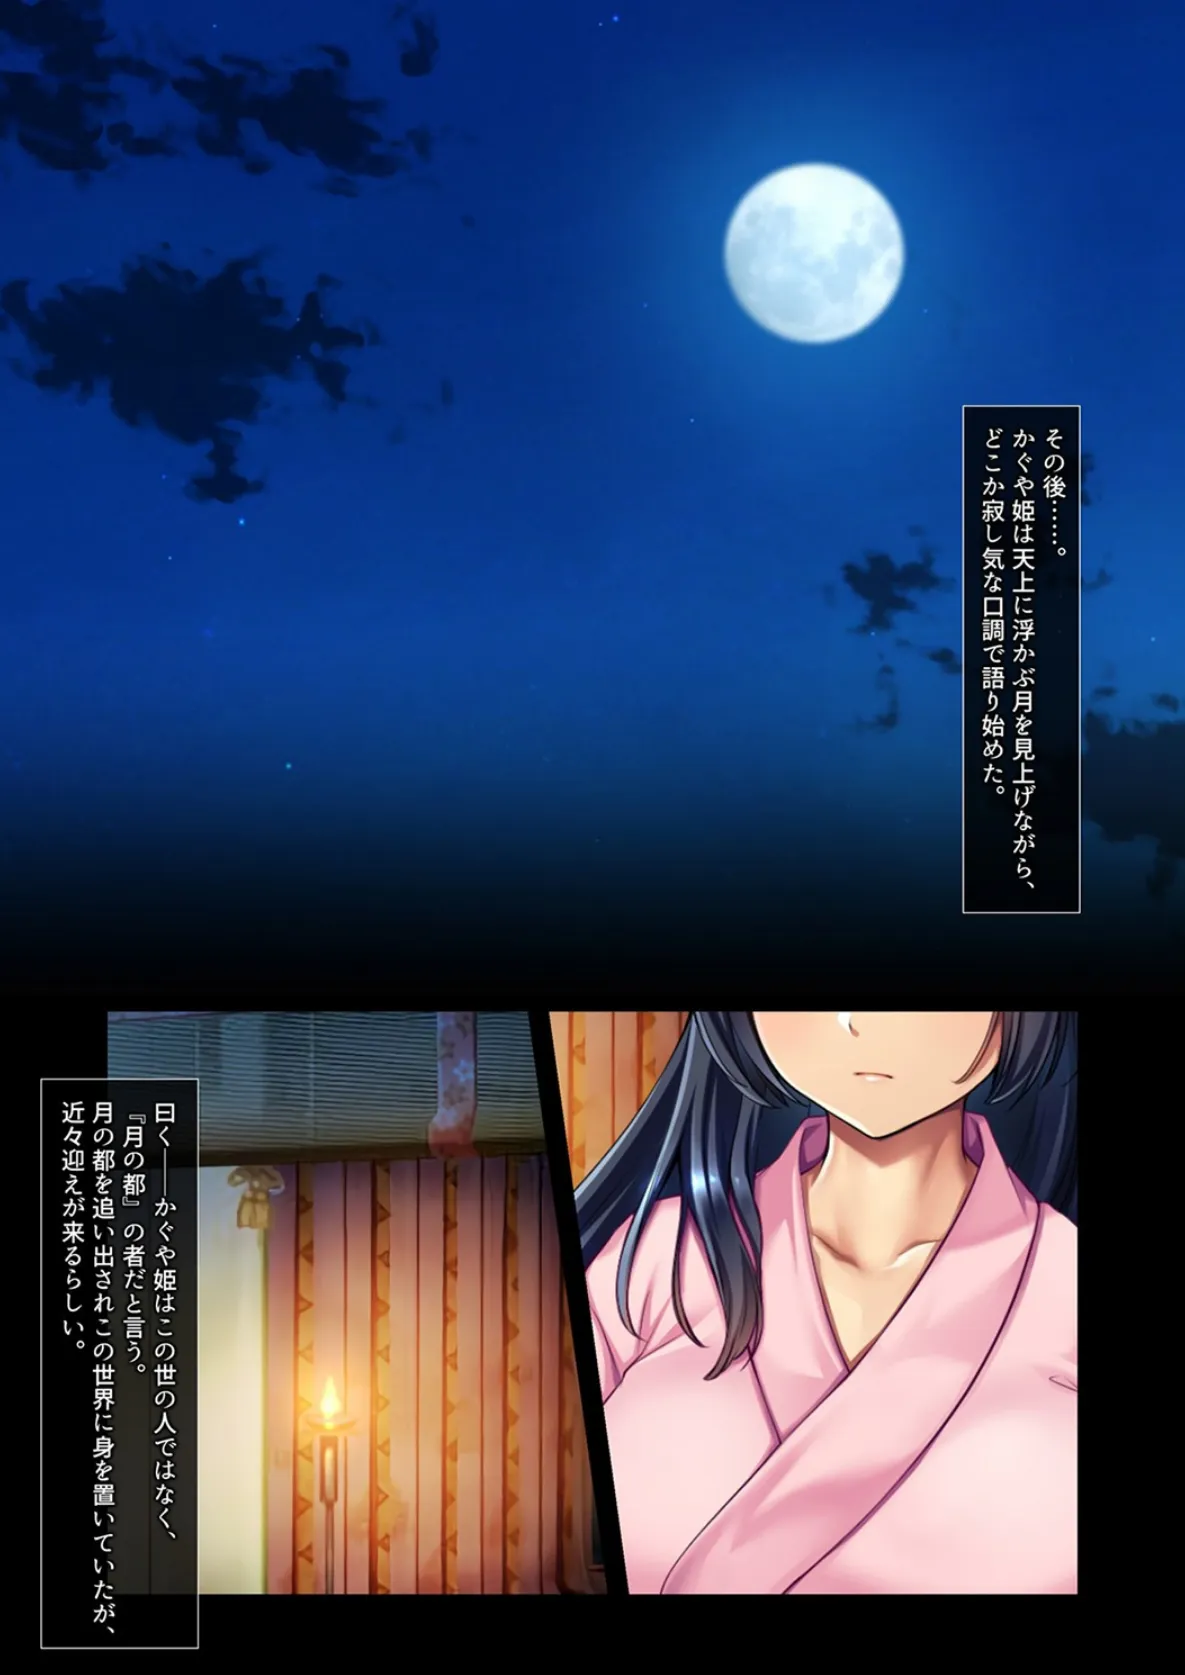 淫らな日本昔話-竹より太い絶倫なアレにハマって月に帰らなくなったかぐや姫- 5 3ページ